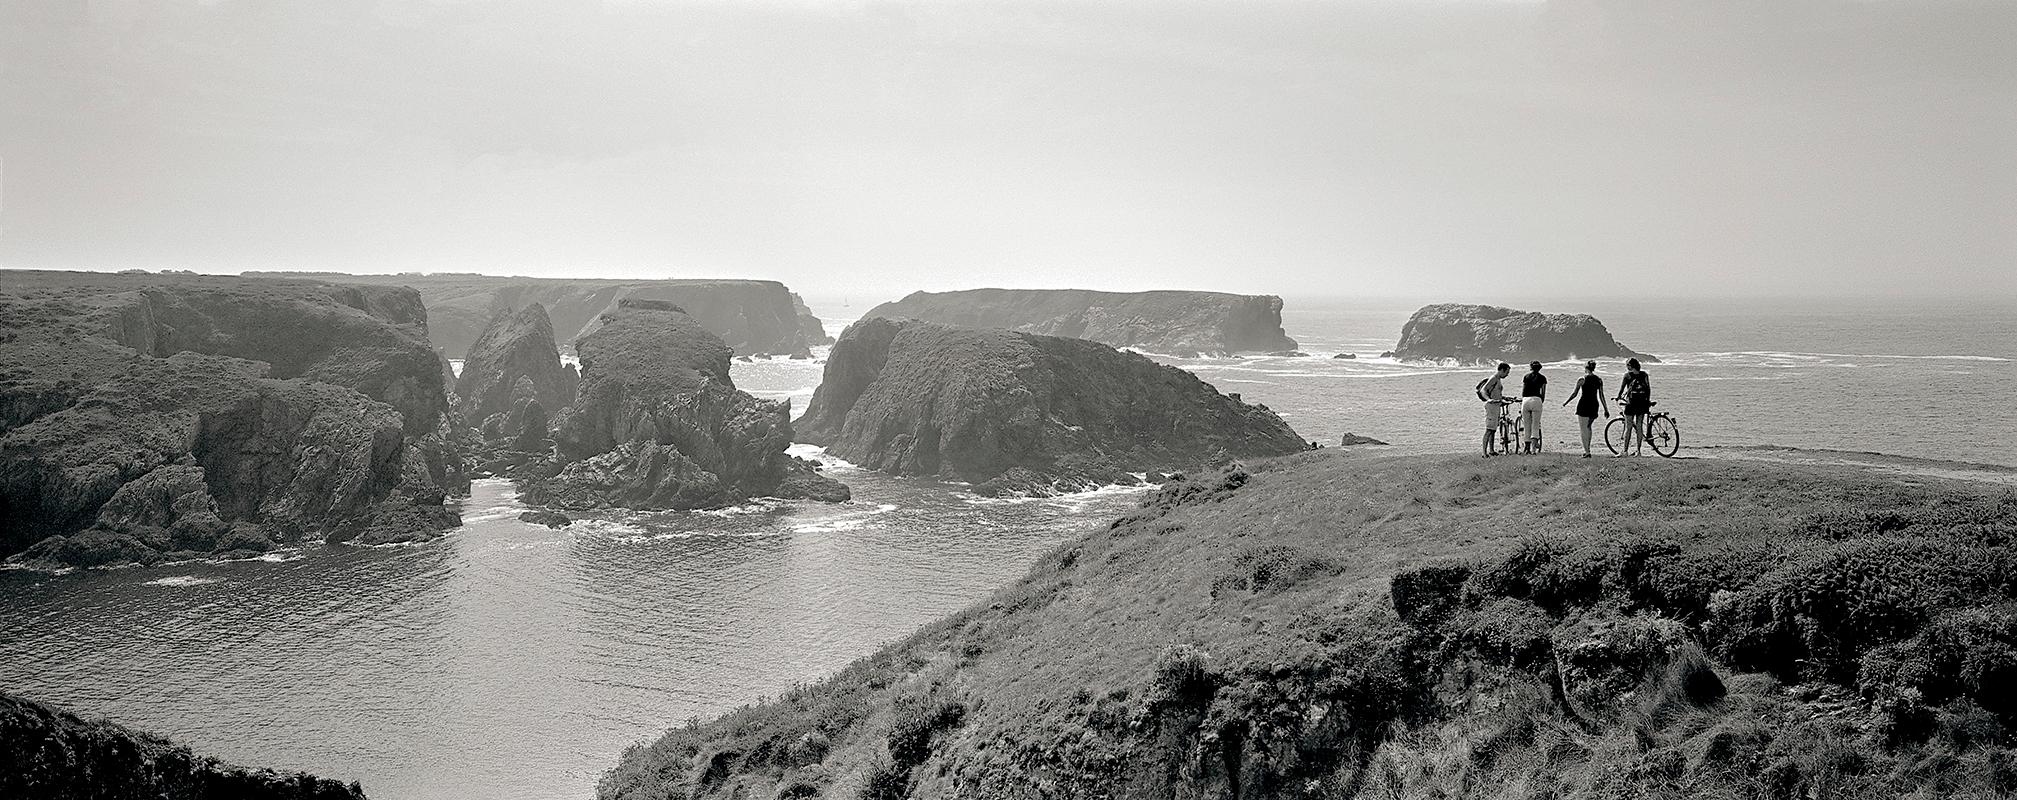 Panorama – Schwarz-Weiß-Fotografie, Druck in limitierter Auflage, Landschaft